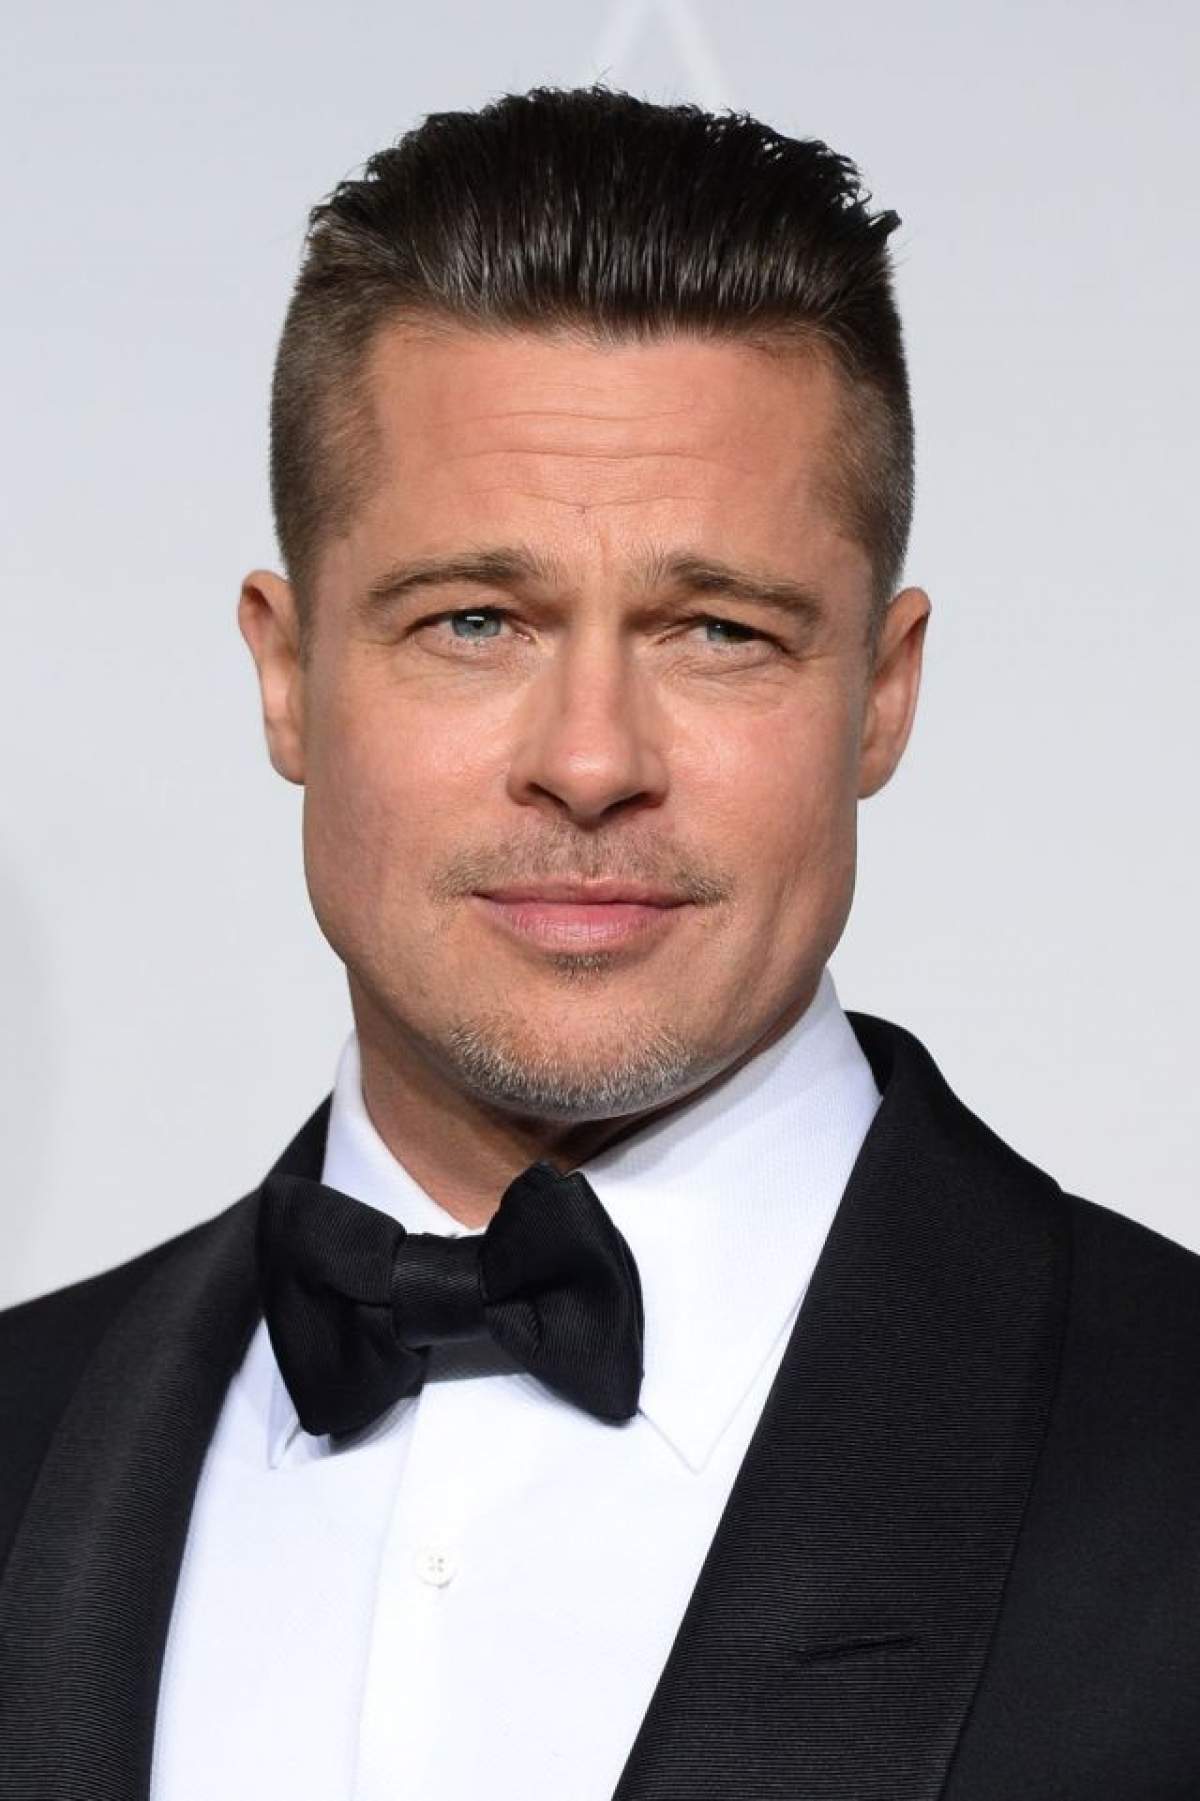 VIDEO / Nu te aşteptai la asta! Ştiai cât de bine seamănă Brad Pitt cu fratele lui?